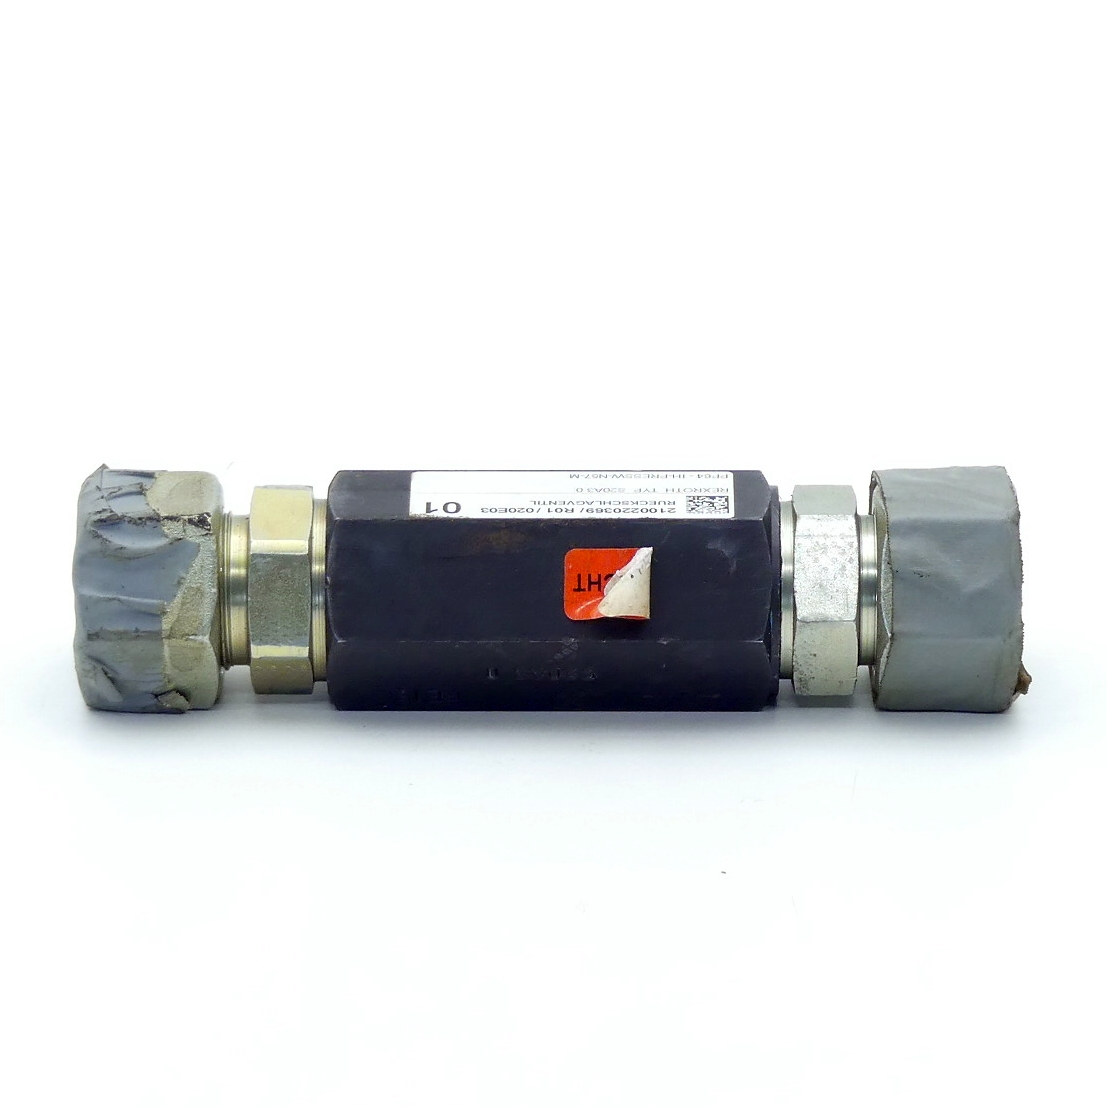 Check valve S20A3.0 